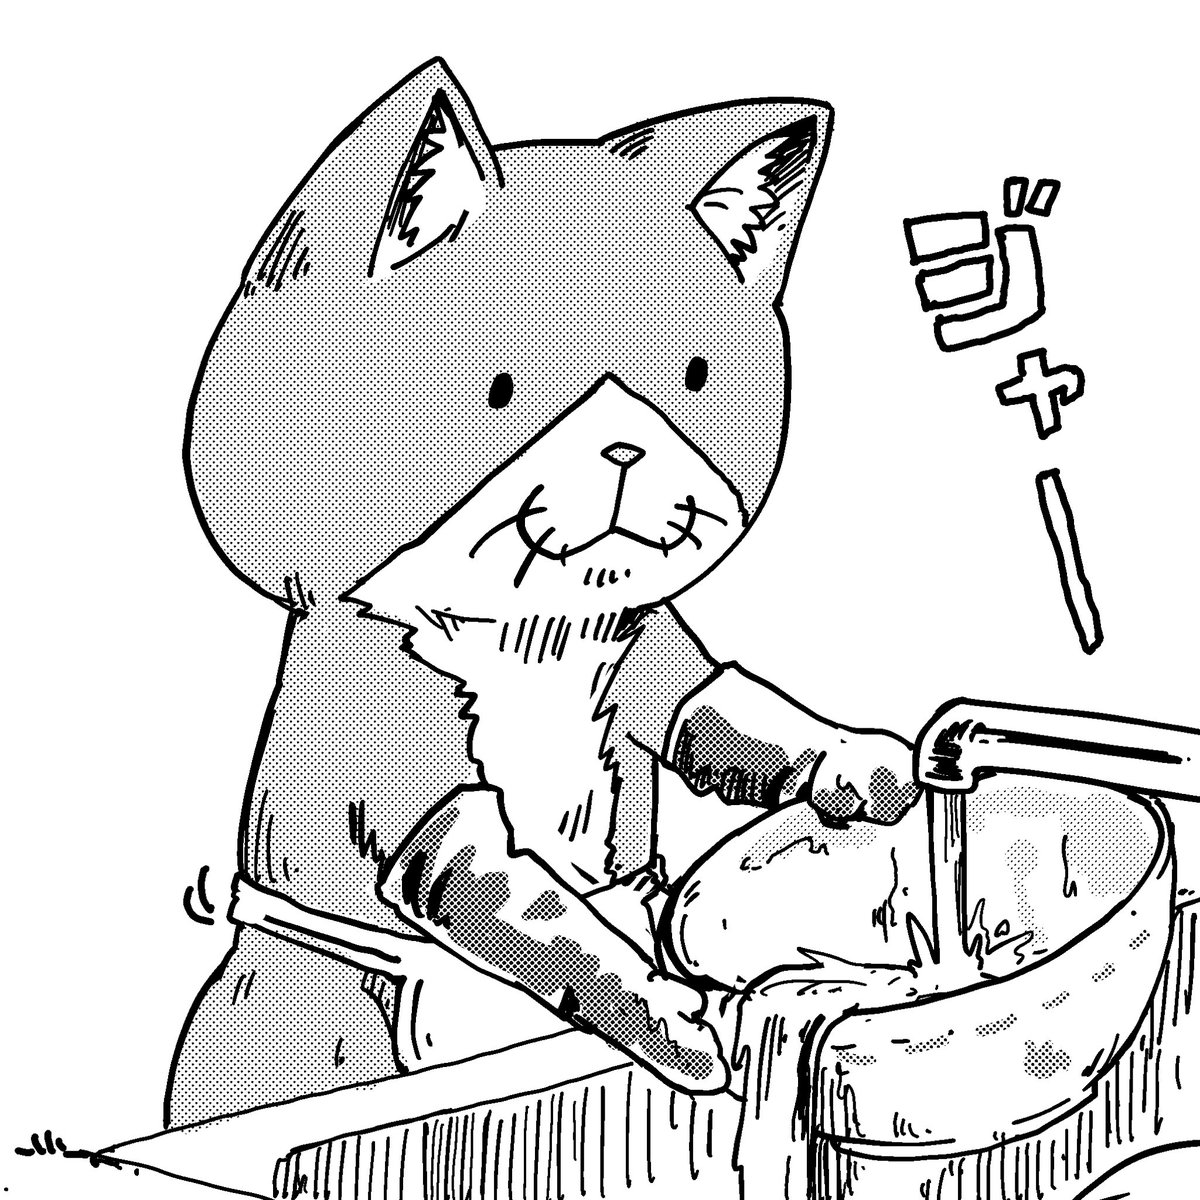 食洗機は猫には使いにくかった
#ラーメン赤猫 